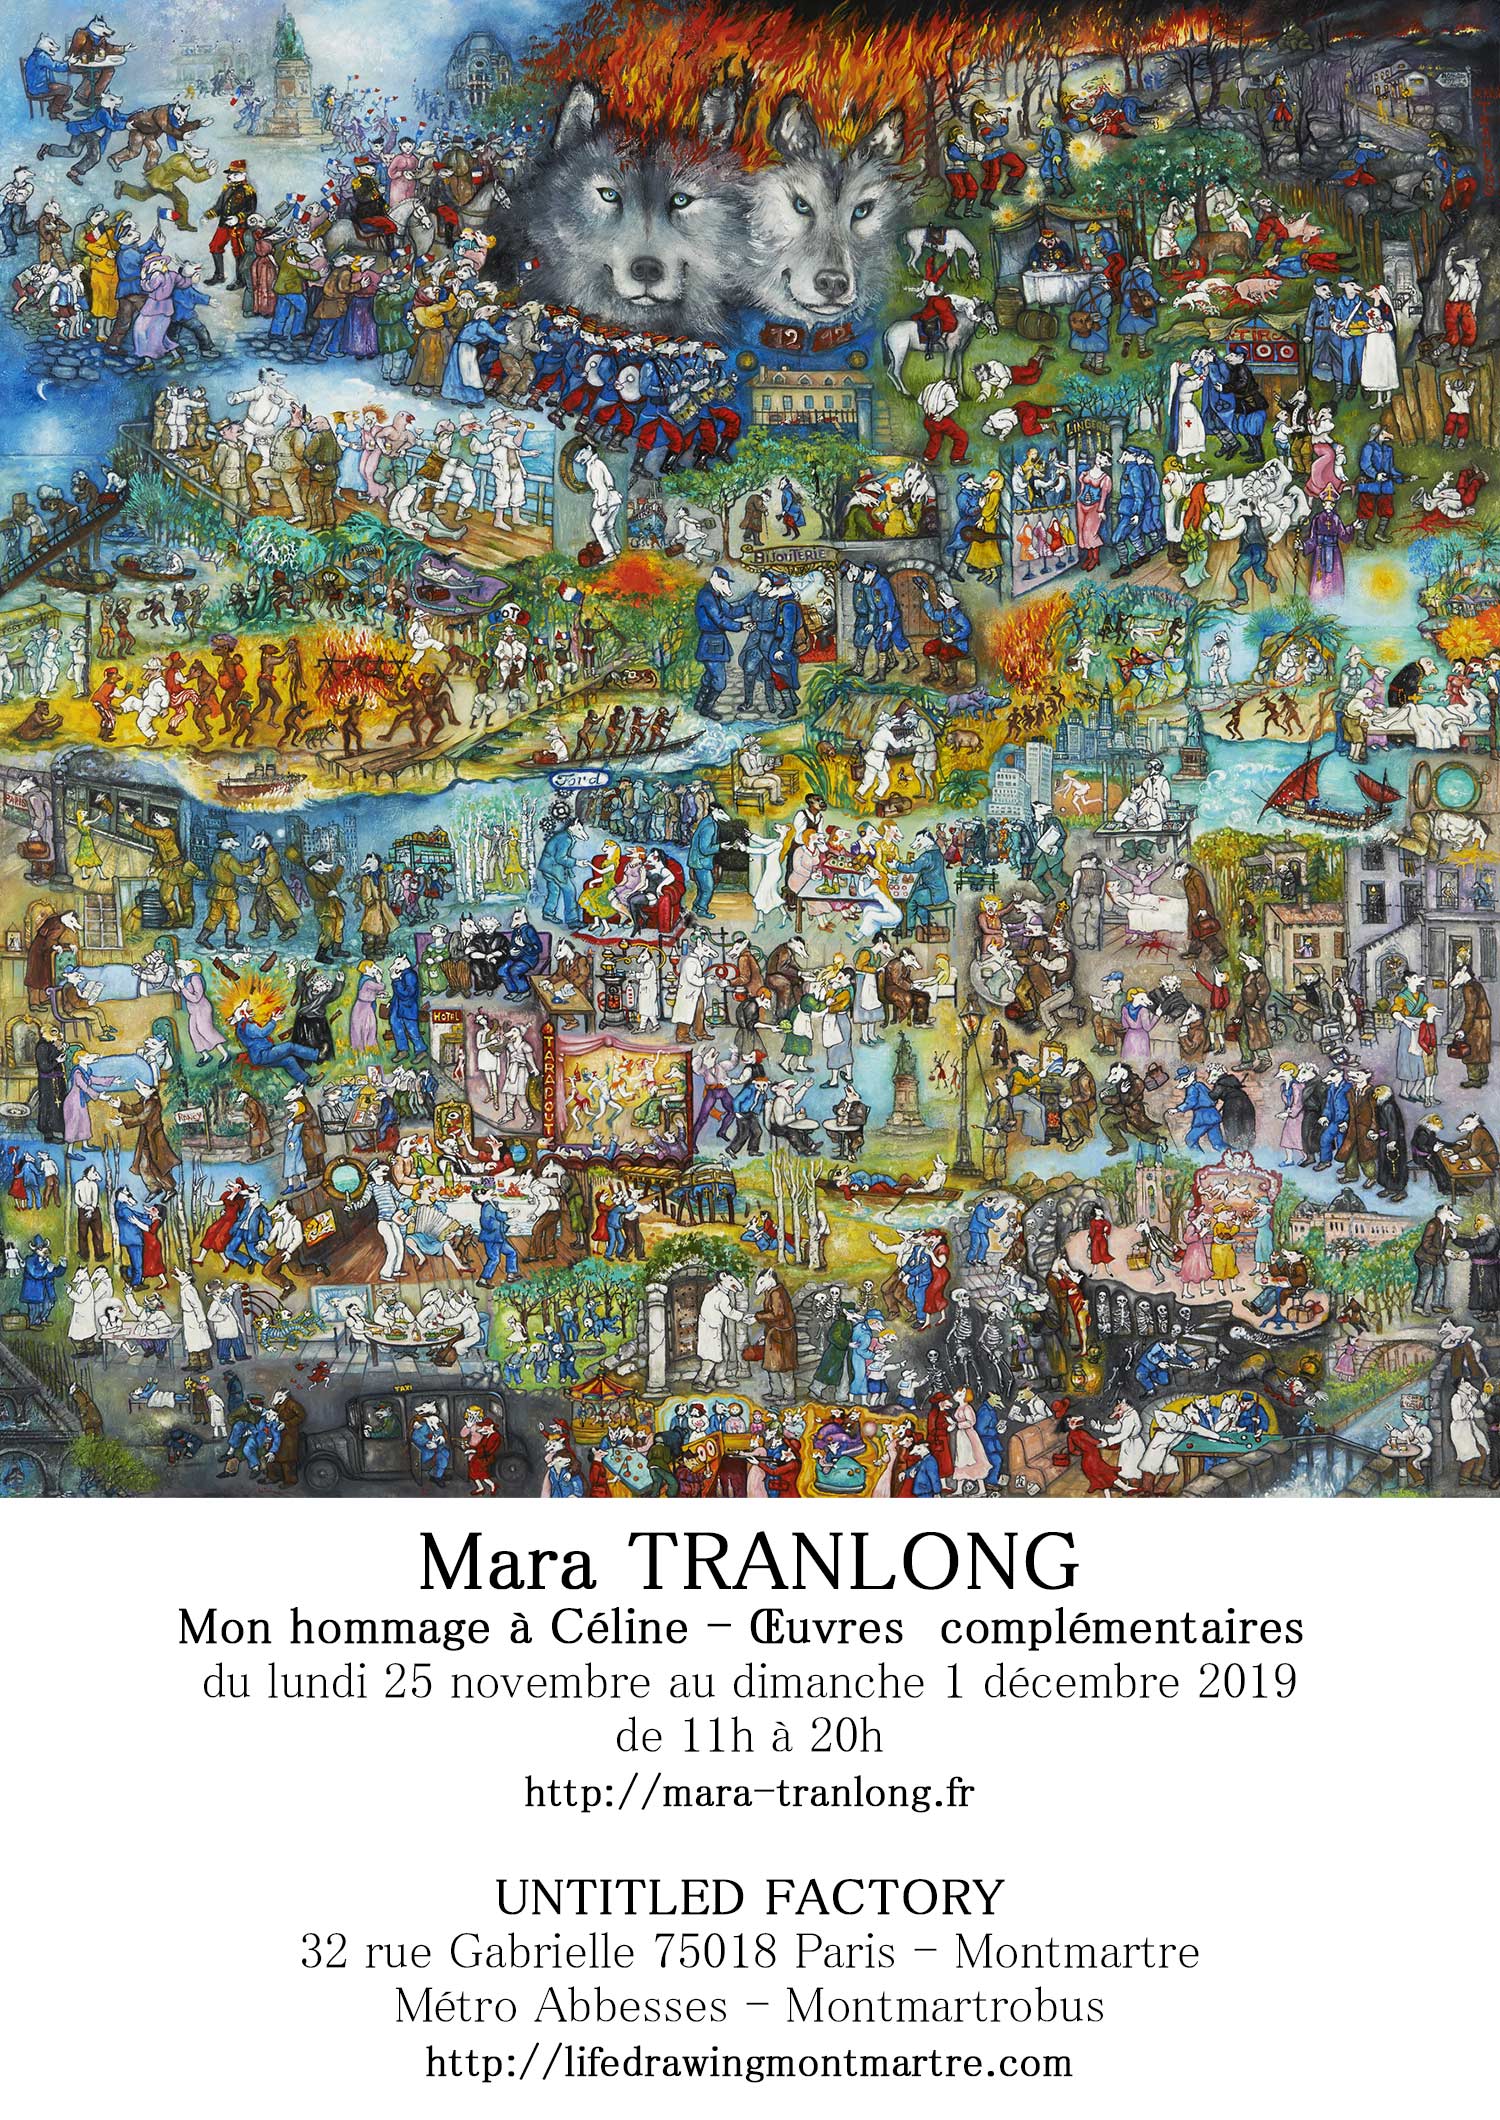 Mara Tranlong - Collection "Mon hommage à Céline" - Titre : "Marche ou crève" - Acrylique sur bois 110 cm x 110 cm - Année 2014